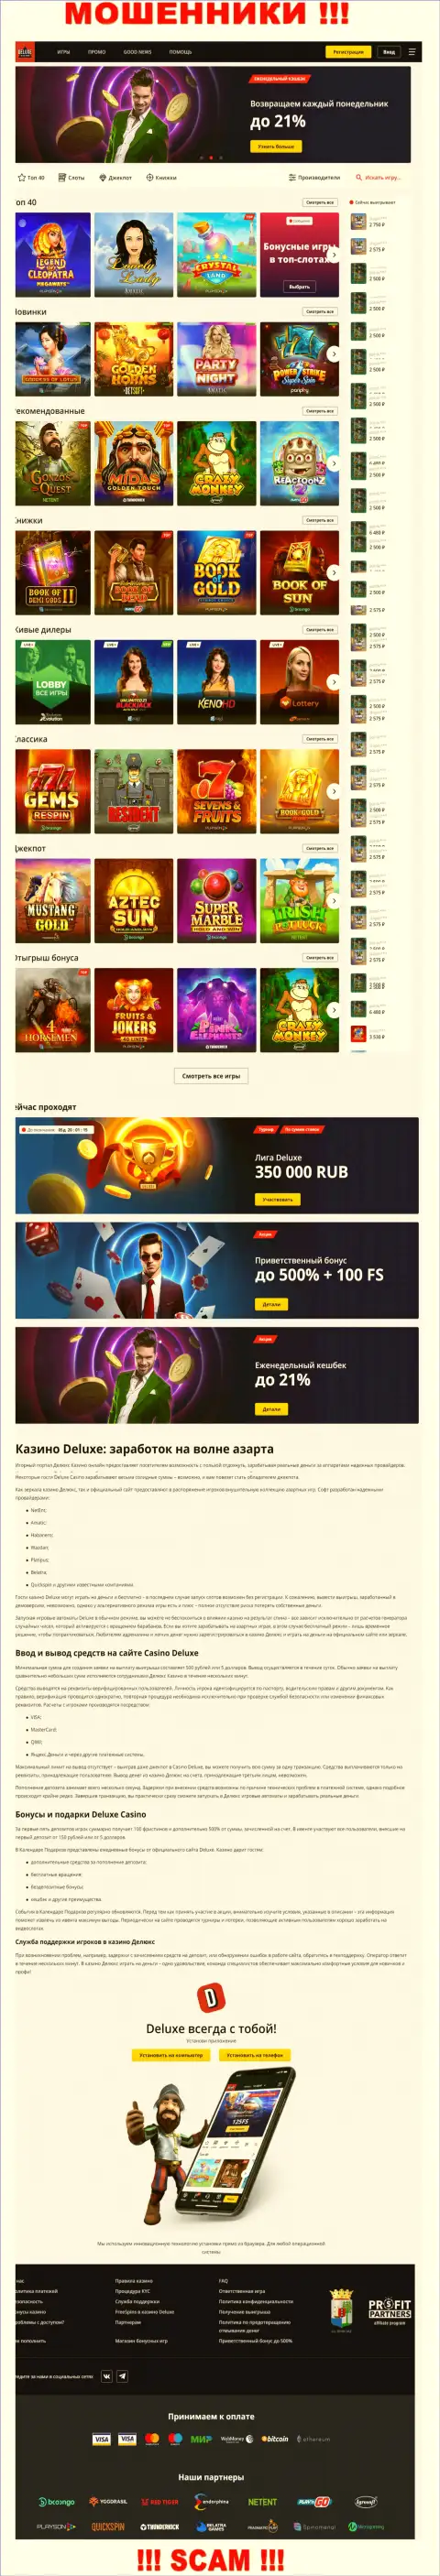 Официальная страница конторы Deluxe-Casino Com